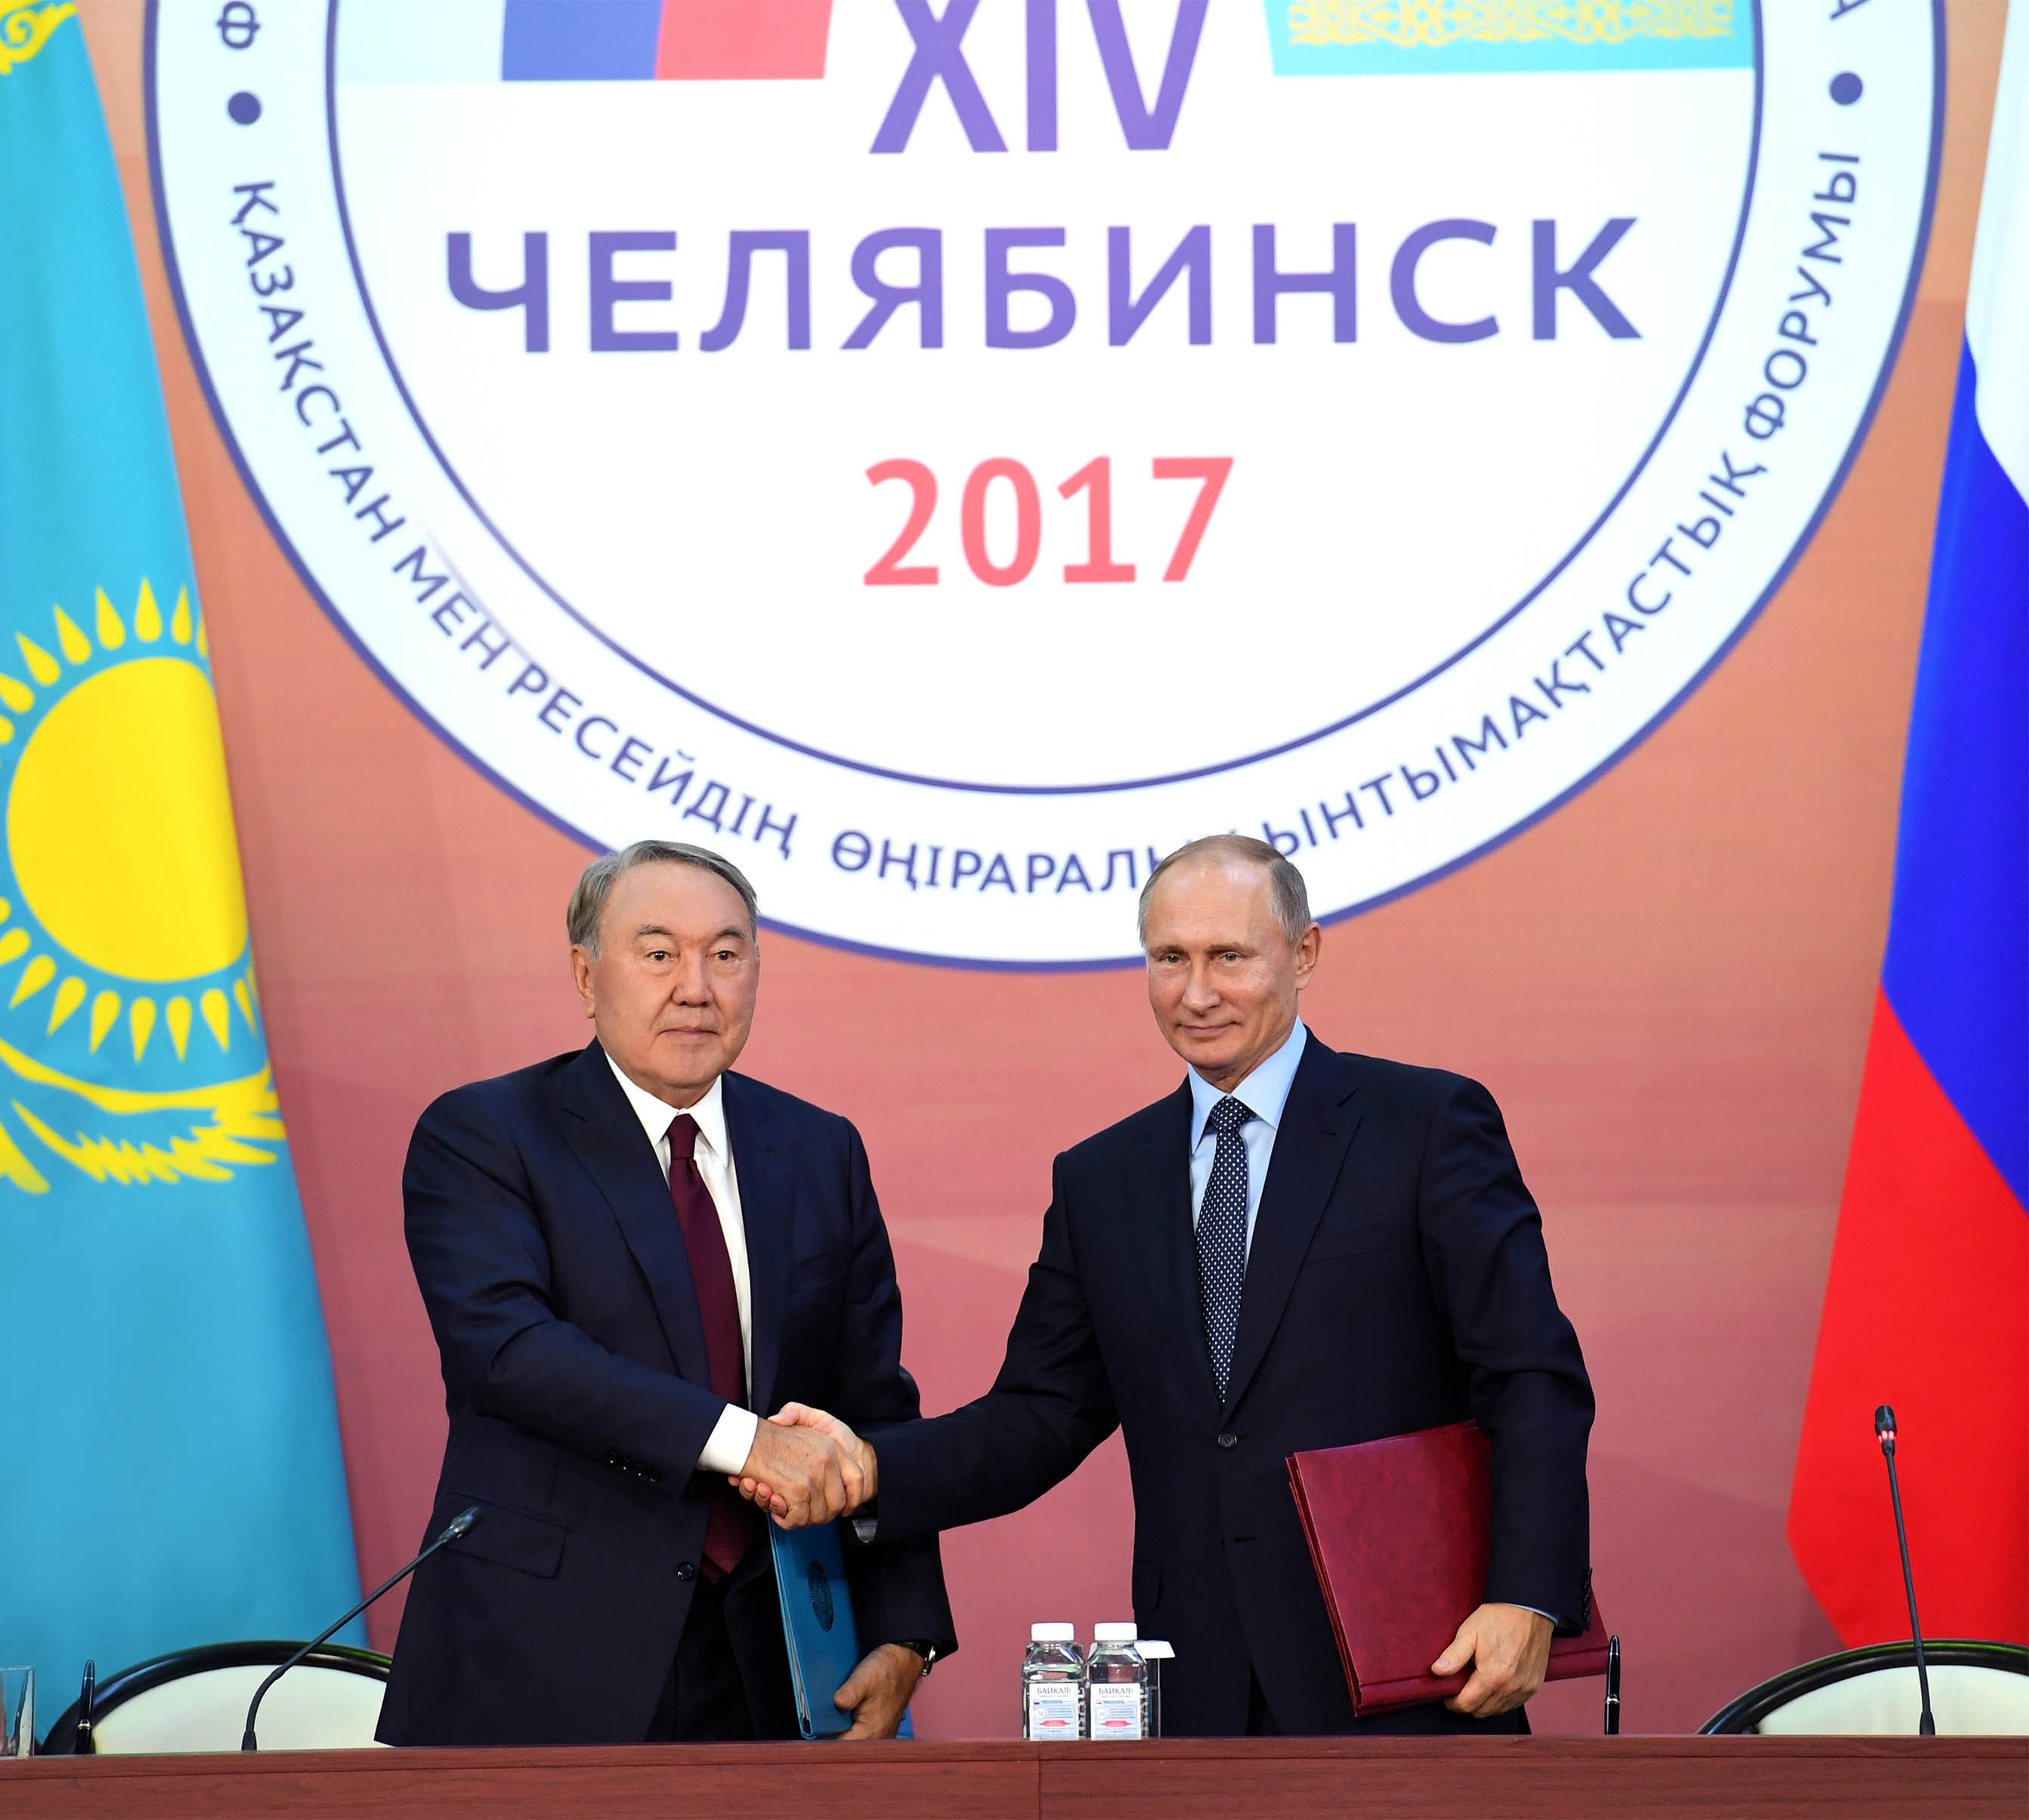 Нурсултан Назарбаев принял участие в ХIV Форуме межрегионального сотрудничества Казахстана и России